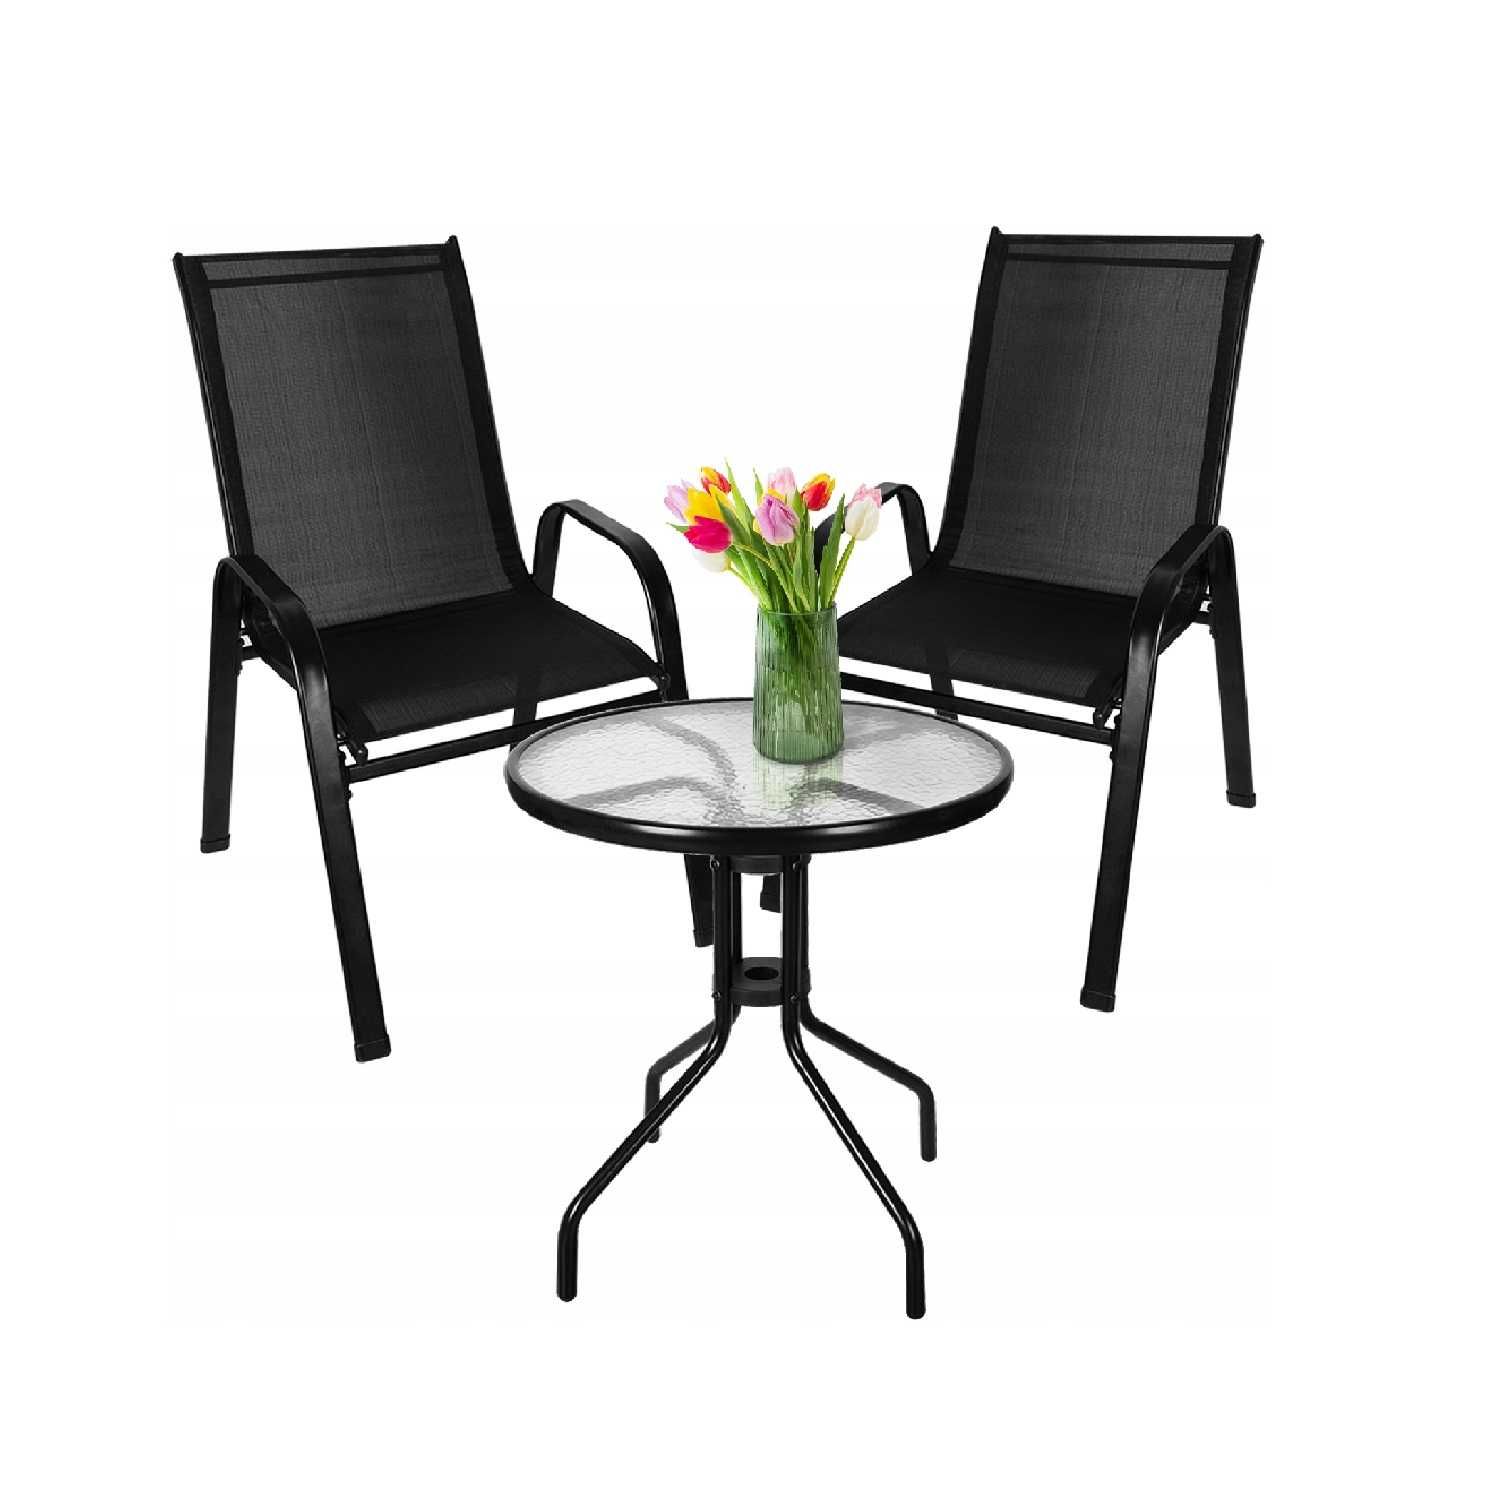 Zestaw mebli ogrodowych, stół i 2 krzesła komplet 3 el.